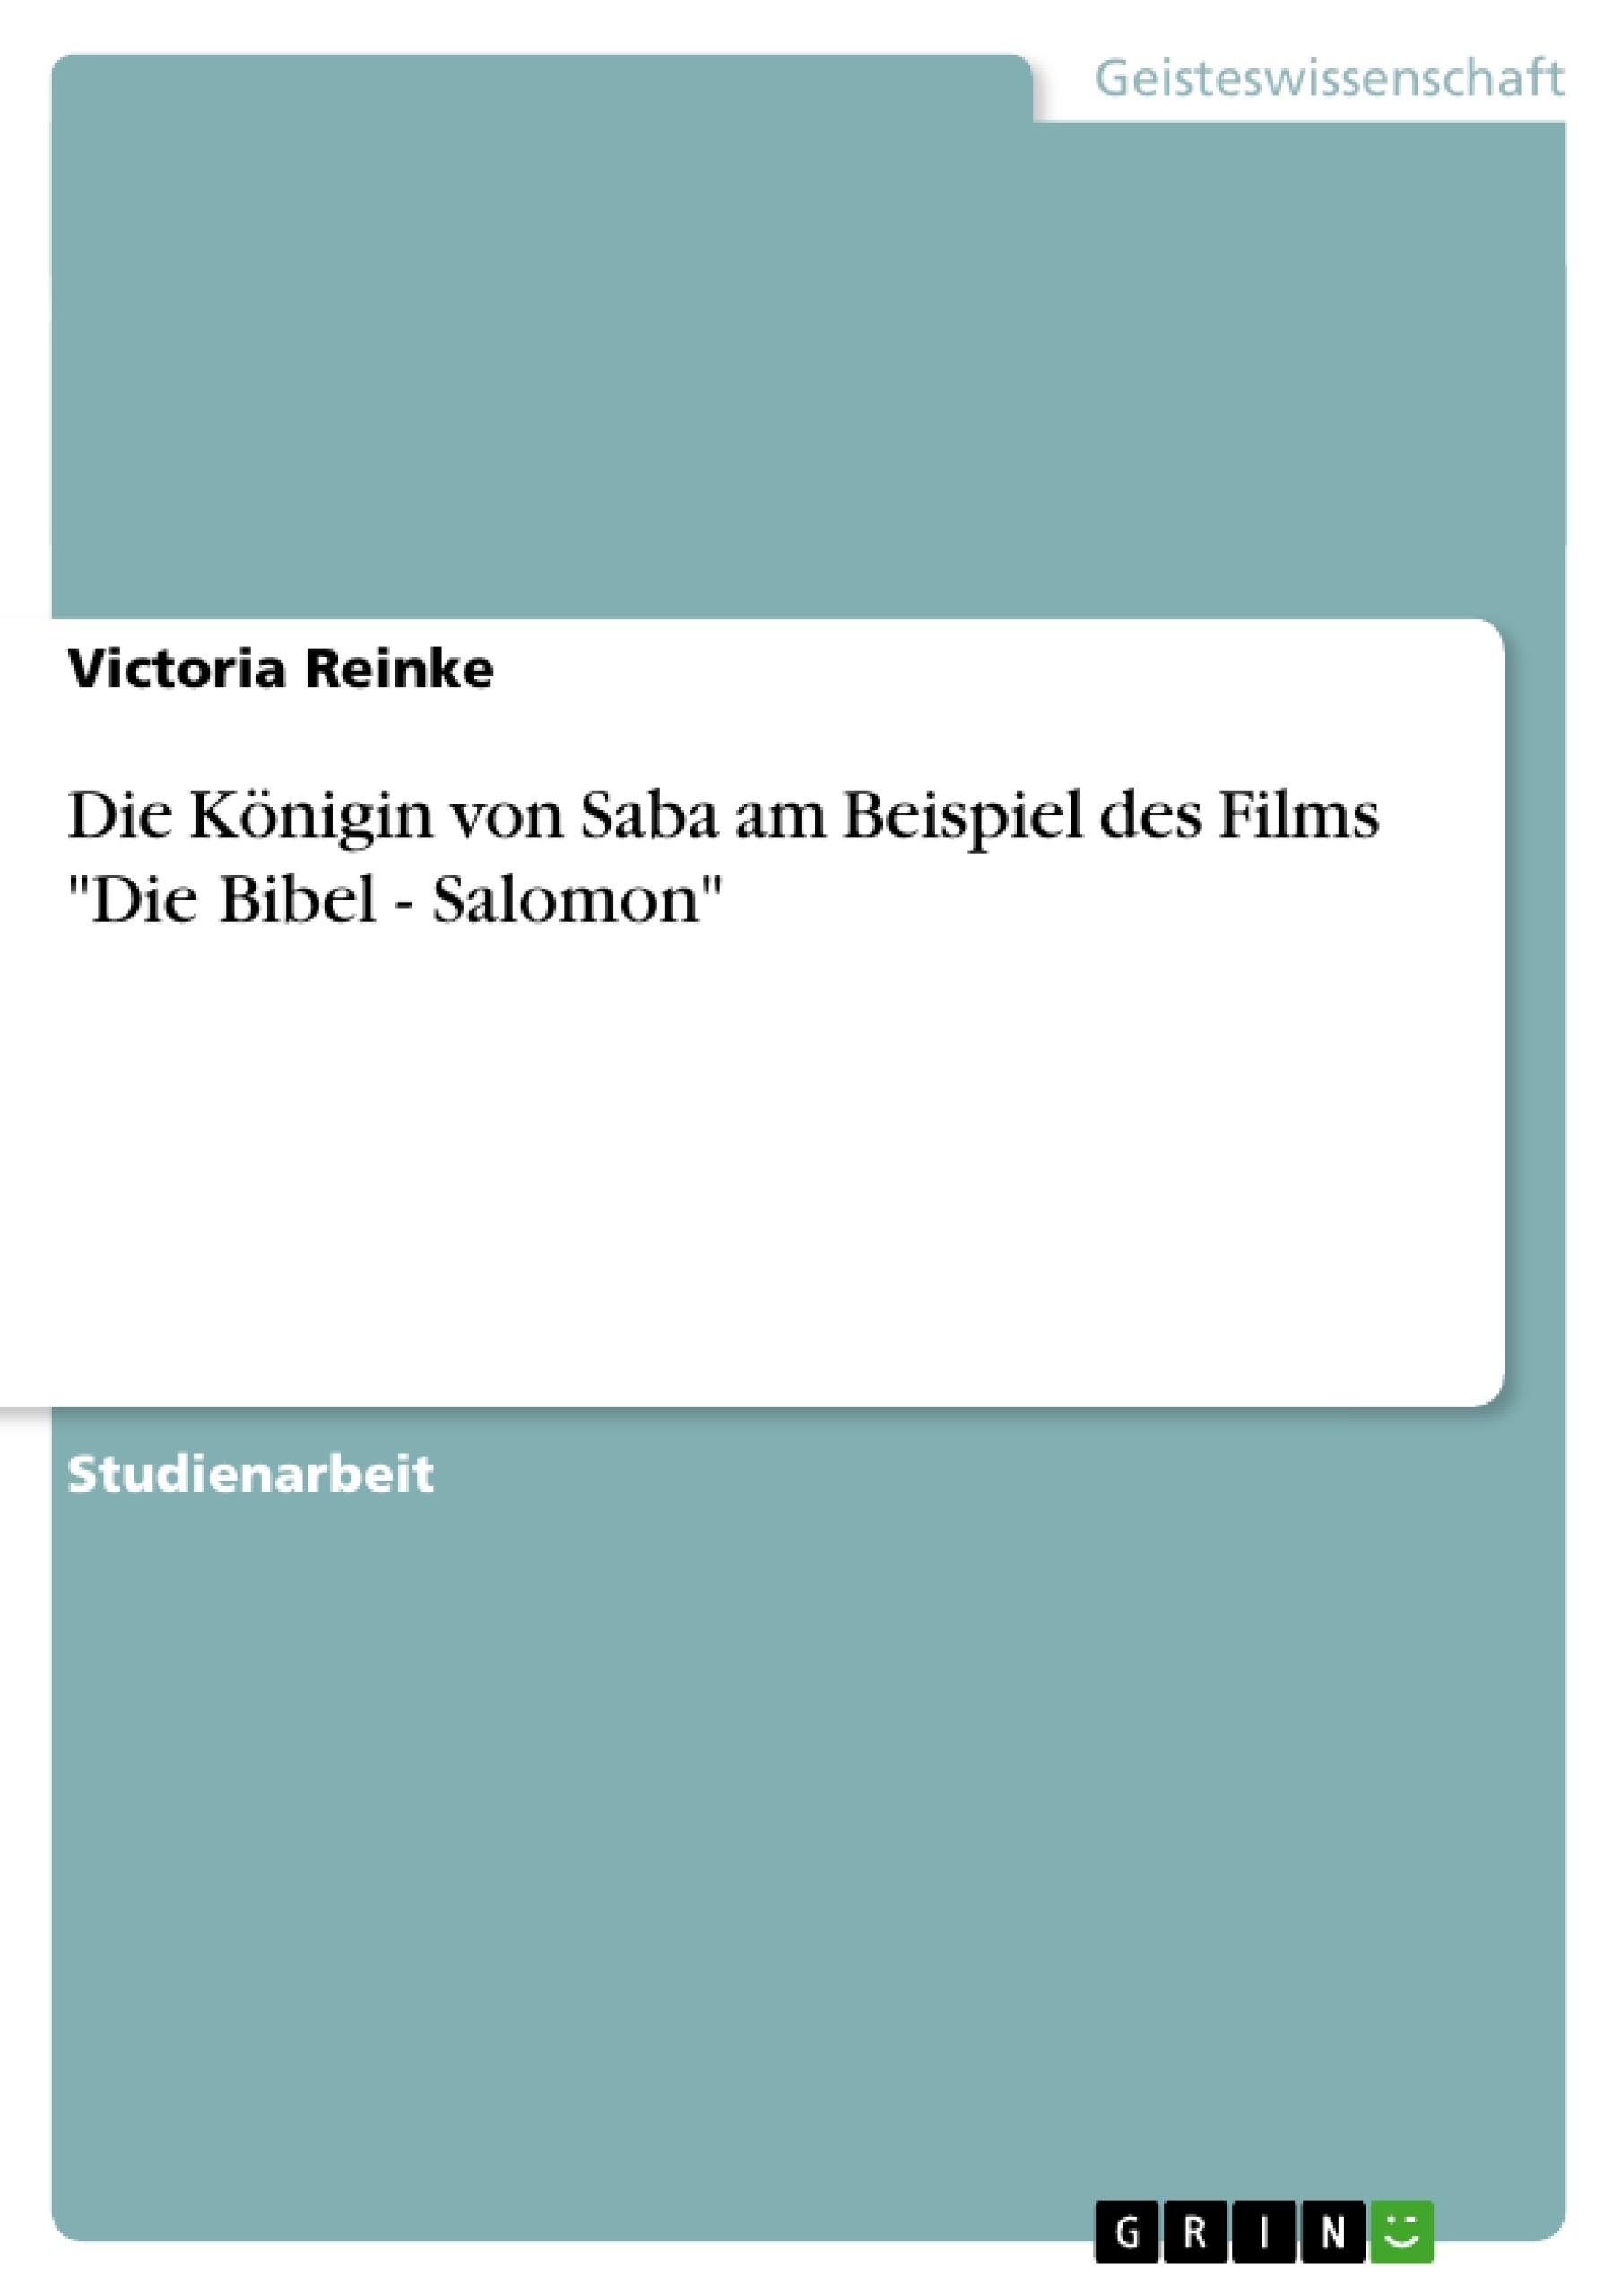 Titre: Die Königin von Saba am Beispiel des Films "Die Bibel - Salomon"